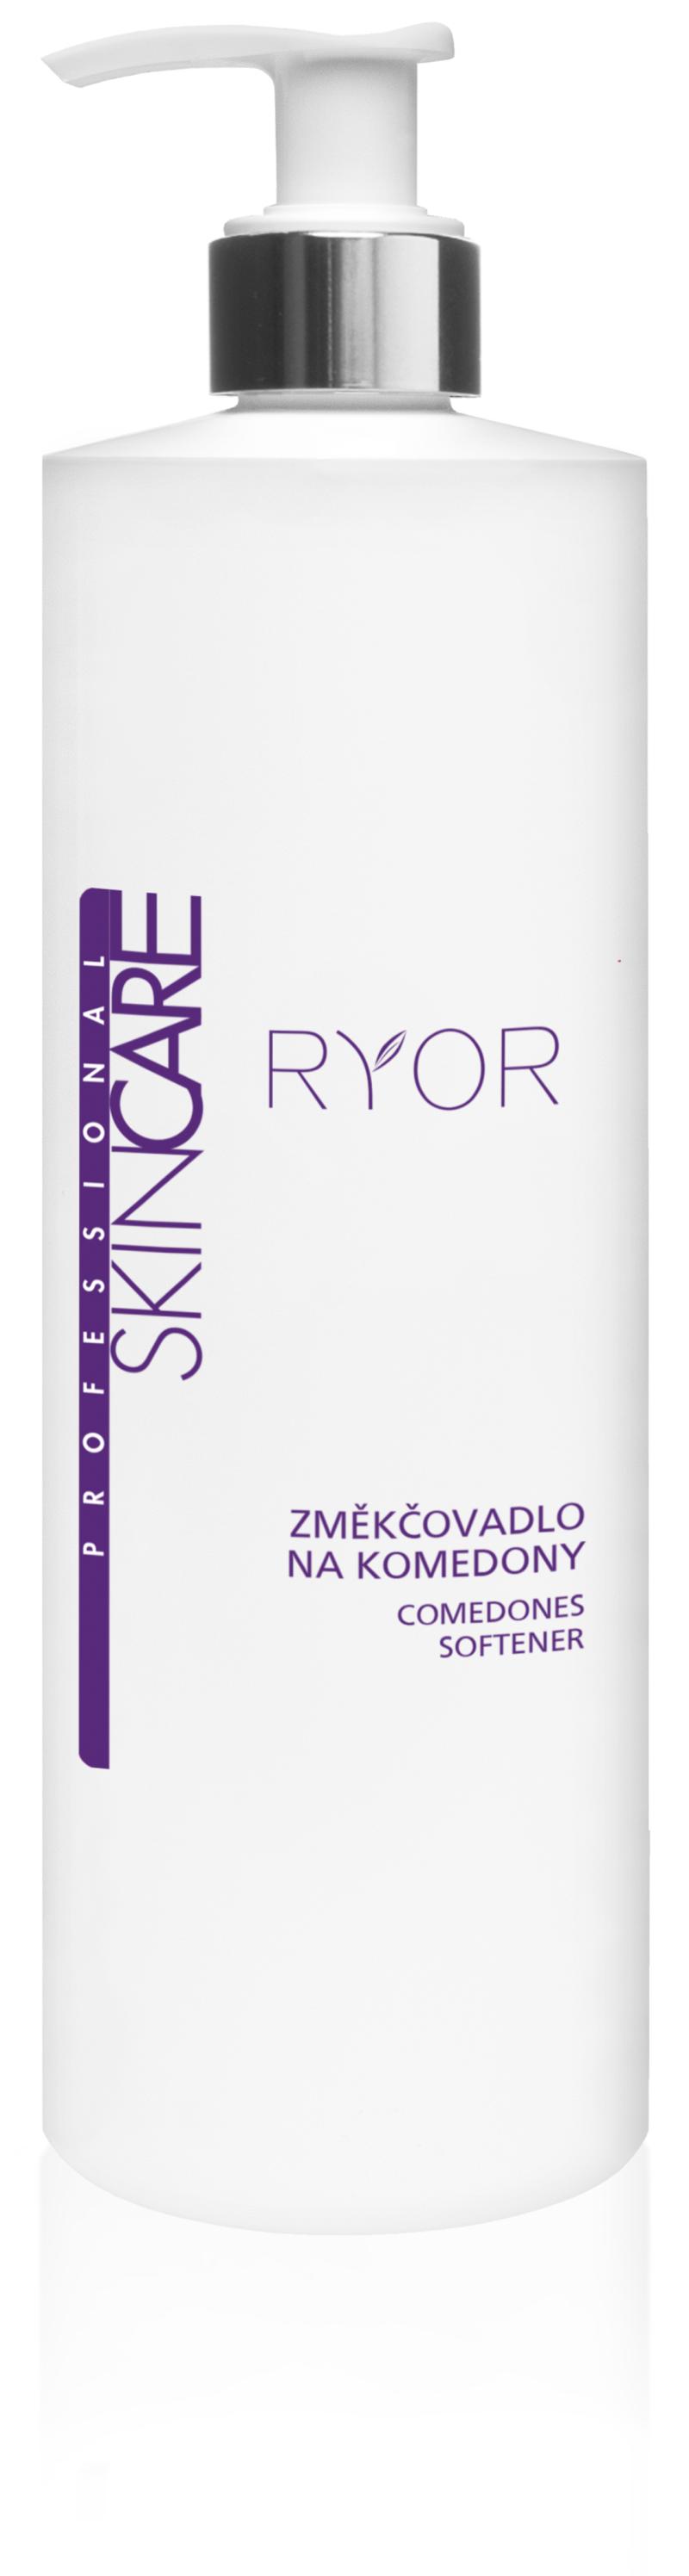 Ryor - Změkčovadlo na komedony (Masáž, peeling a změkčení pleti)